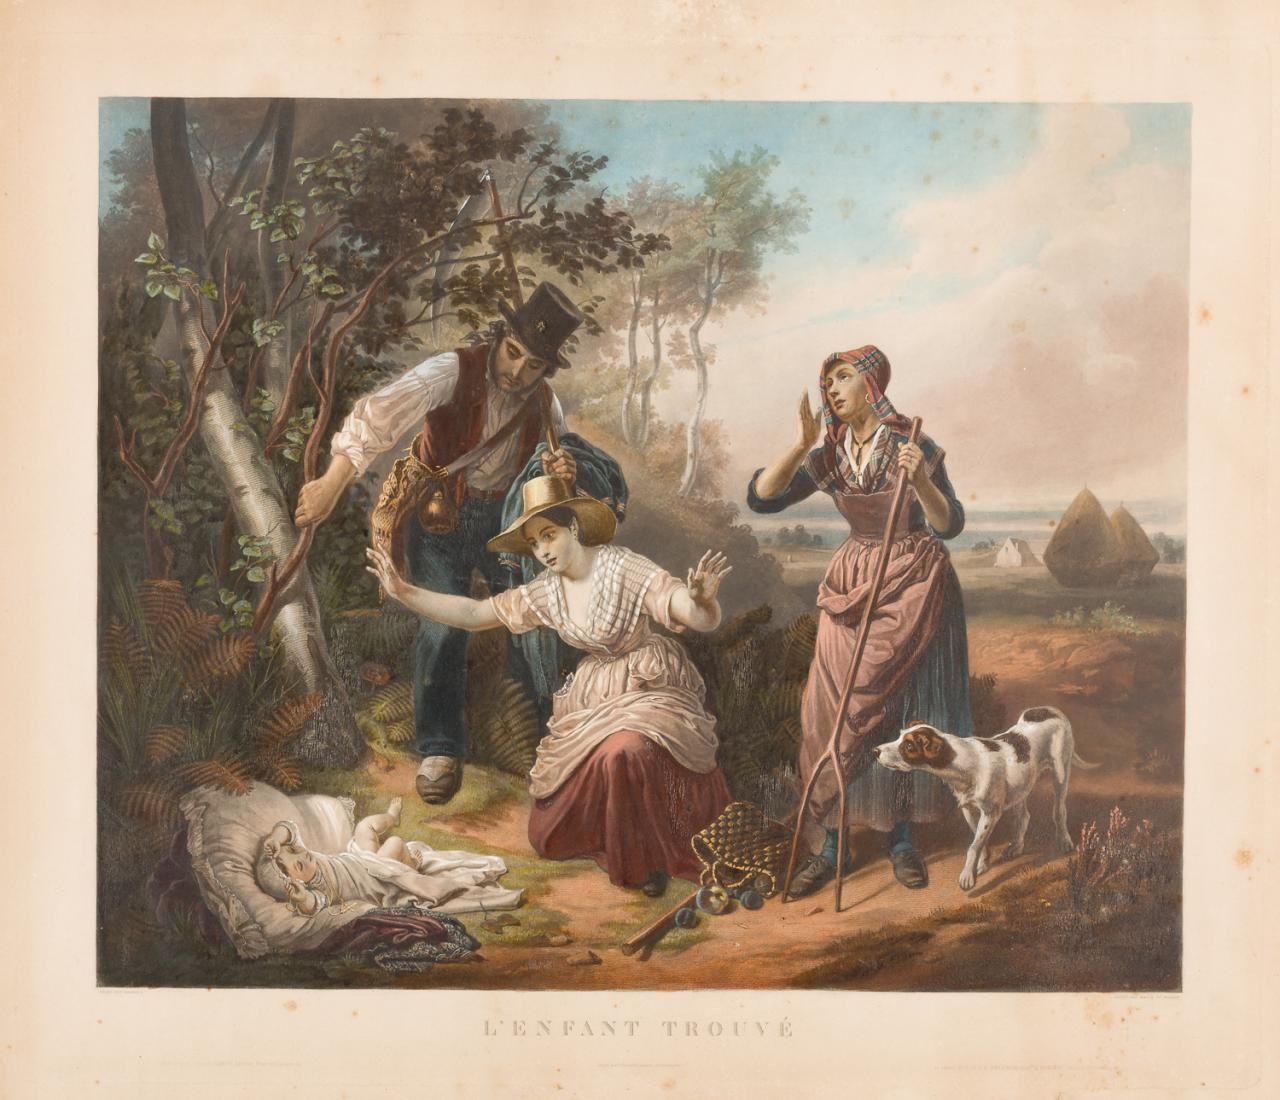 ESCUELA FRANCESA, S. XIX L'enfant trouvé
Lithographie en couleurs
60 x 70 cm